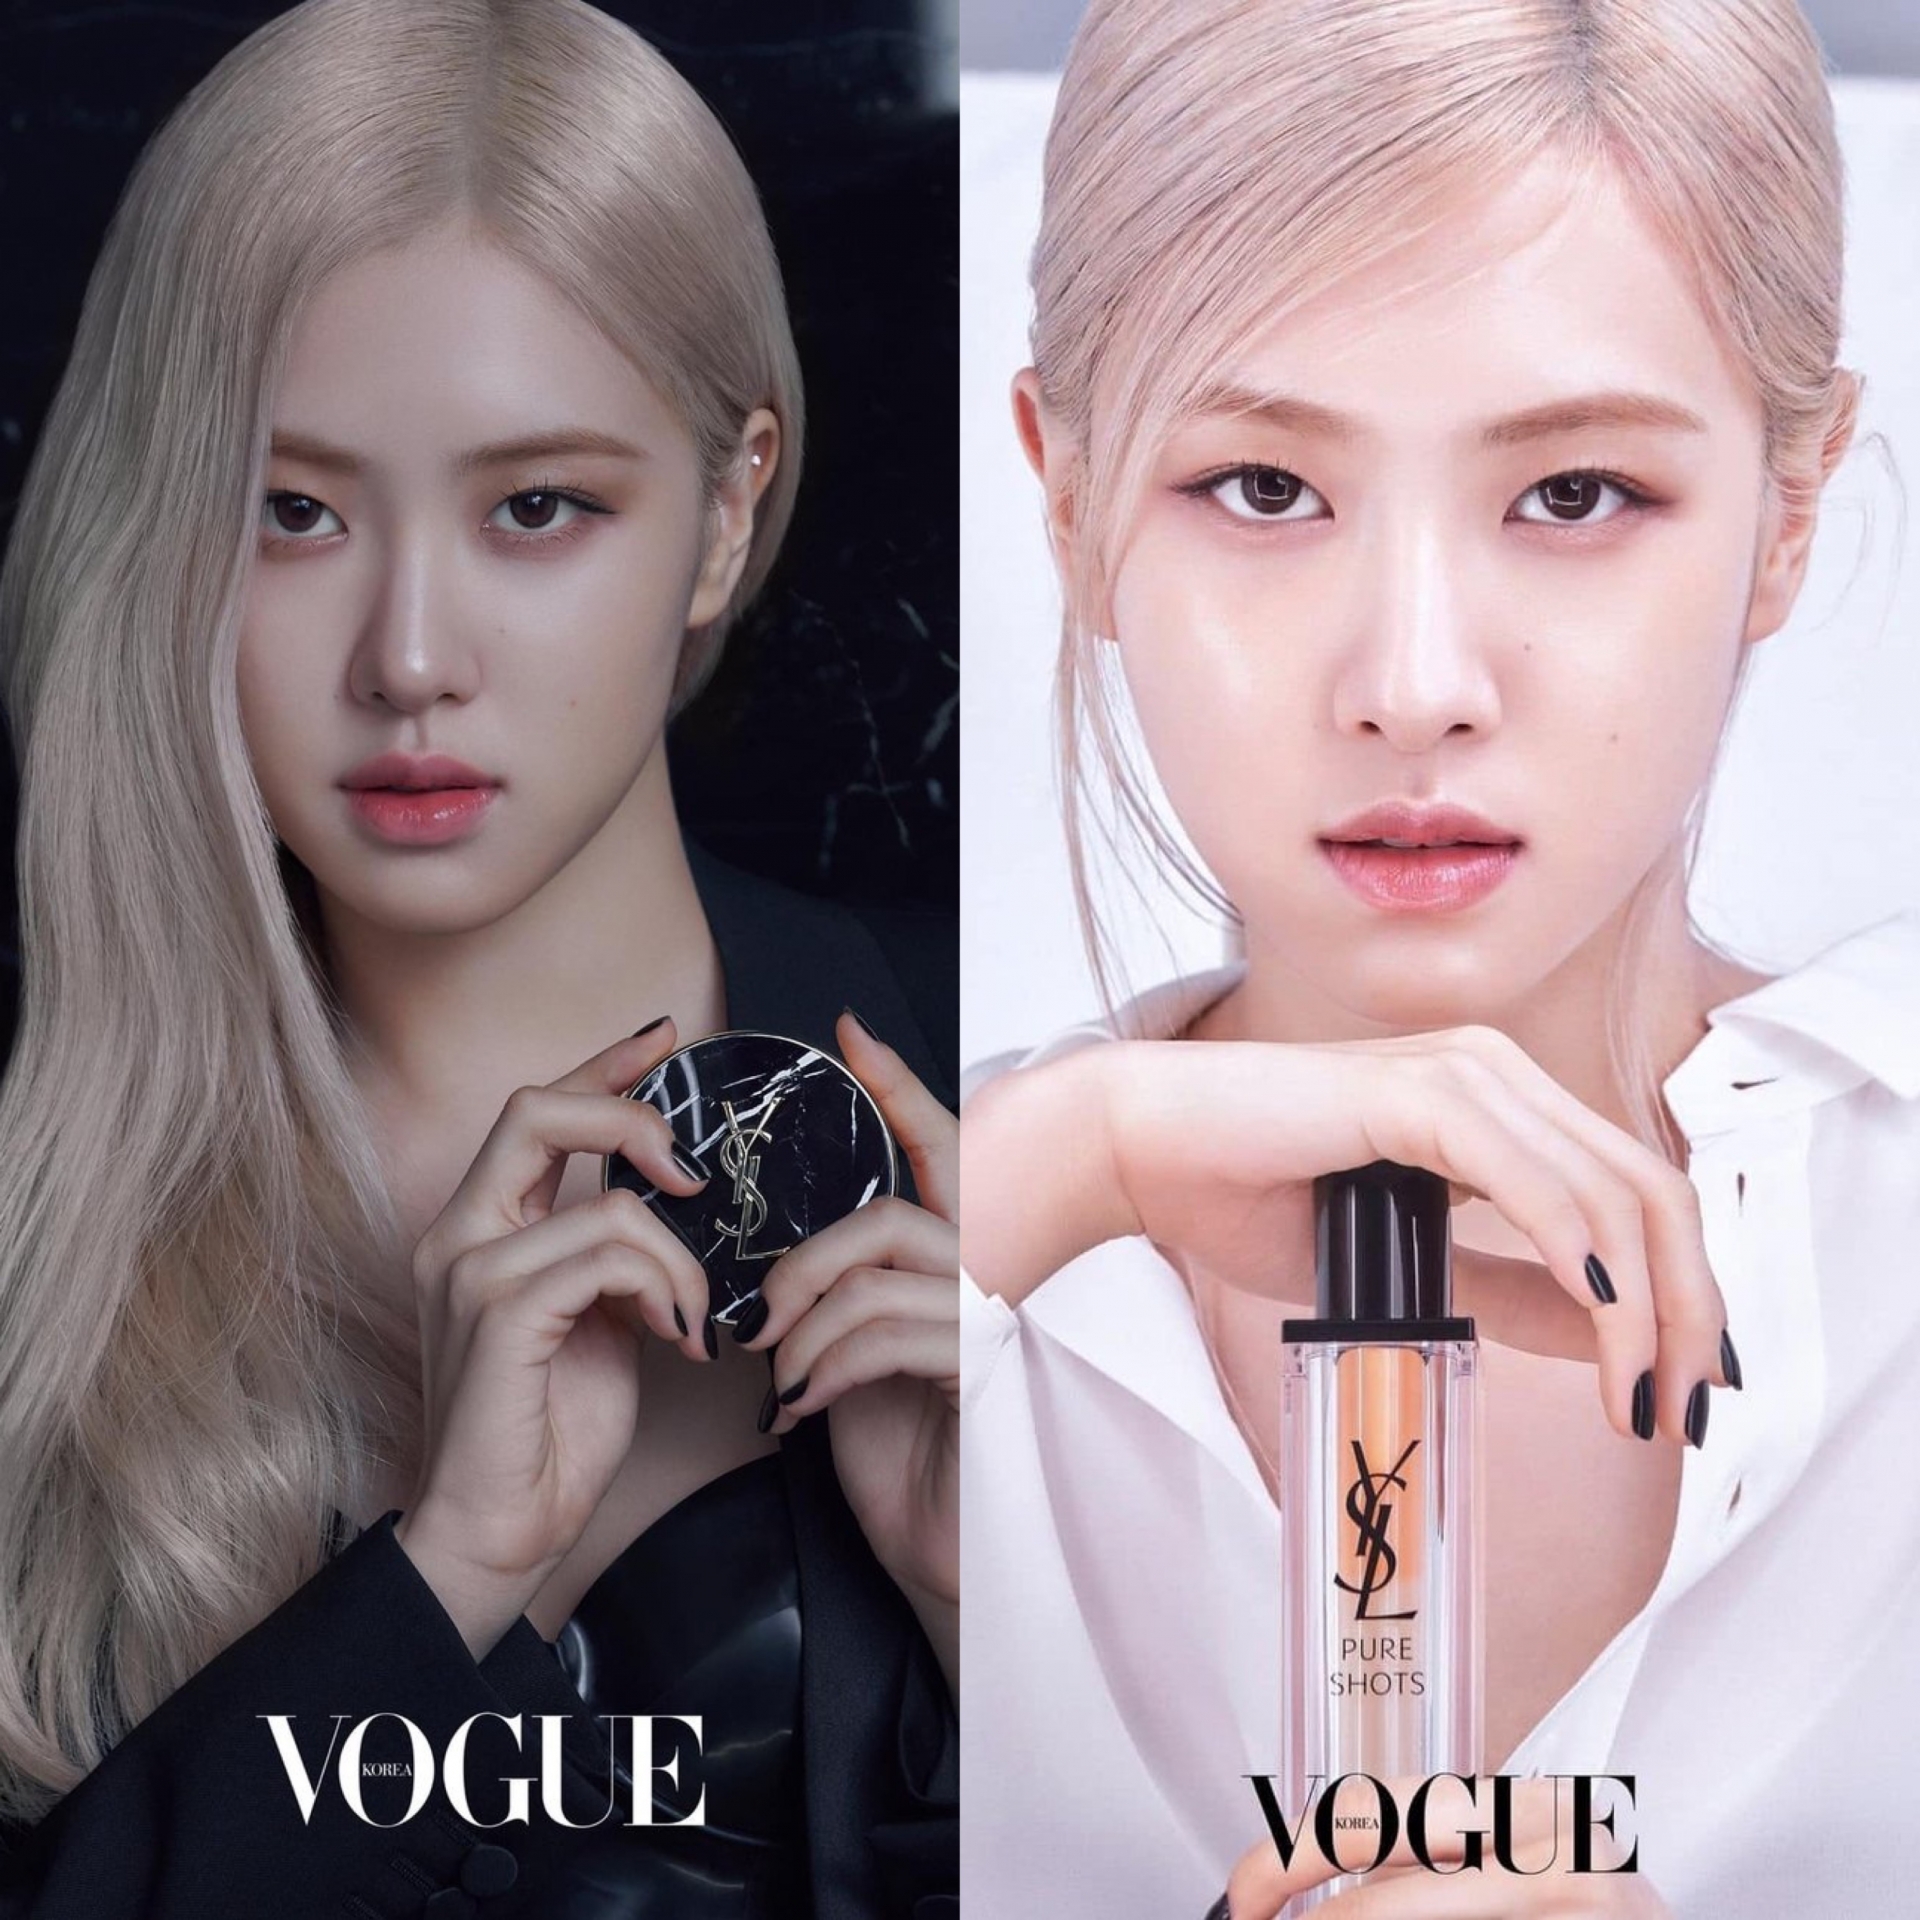 Dù là đại sứ giúp các sản phẩm của YSL Beauty 'cháy hàng' nhưng biểu cảm của Rosé vẫn khiến netizen phải lên tiếng chê trách. Dù quảng cáo cushion, nước hoa, son... thì người đẹp vẫn chỉ trung thành với vẻ mặt này mà thôi.